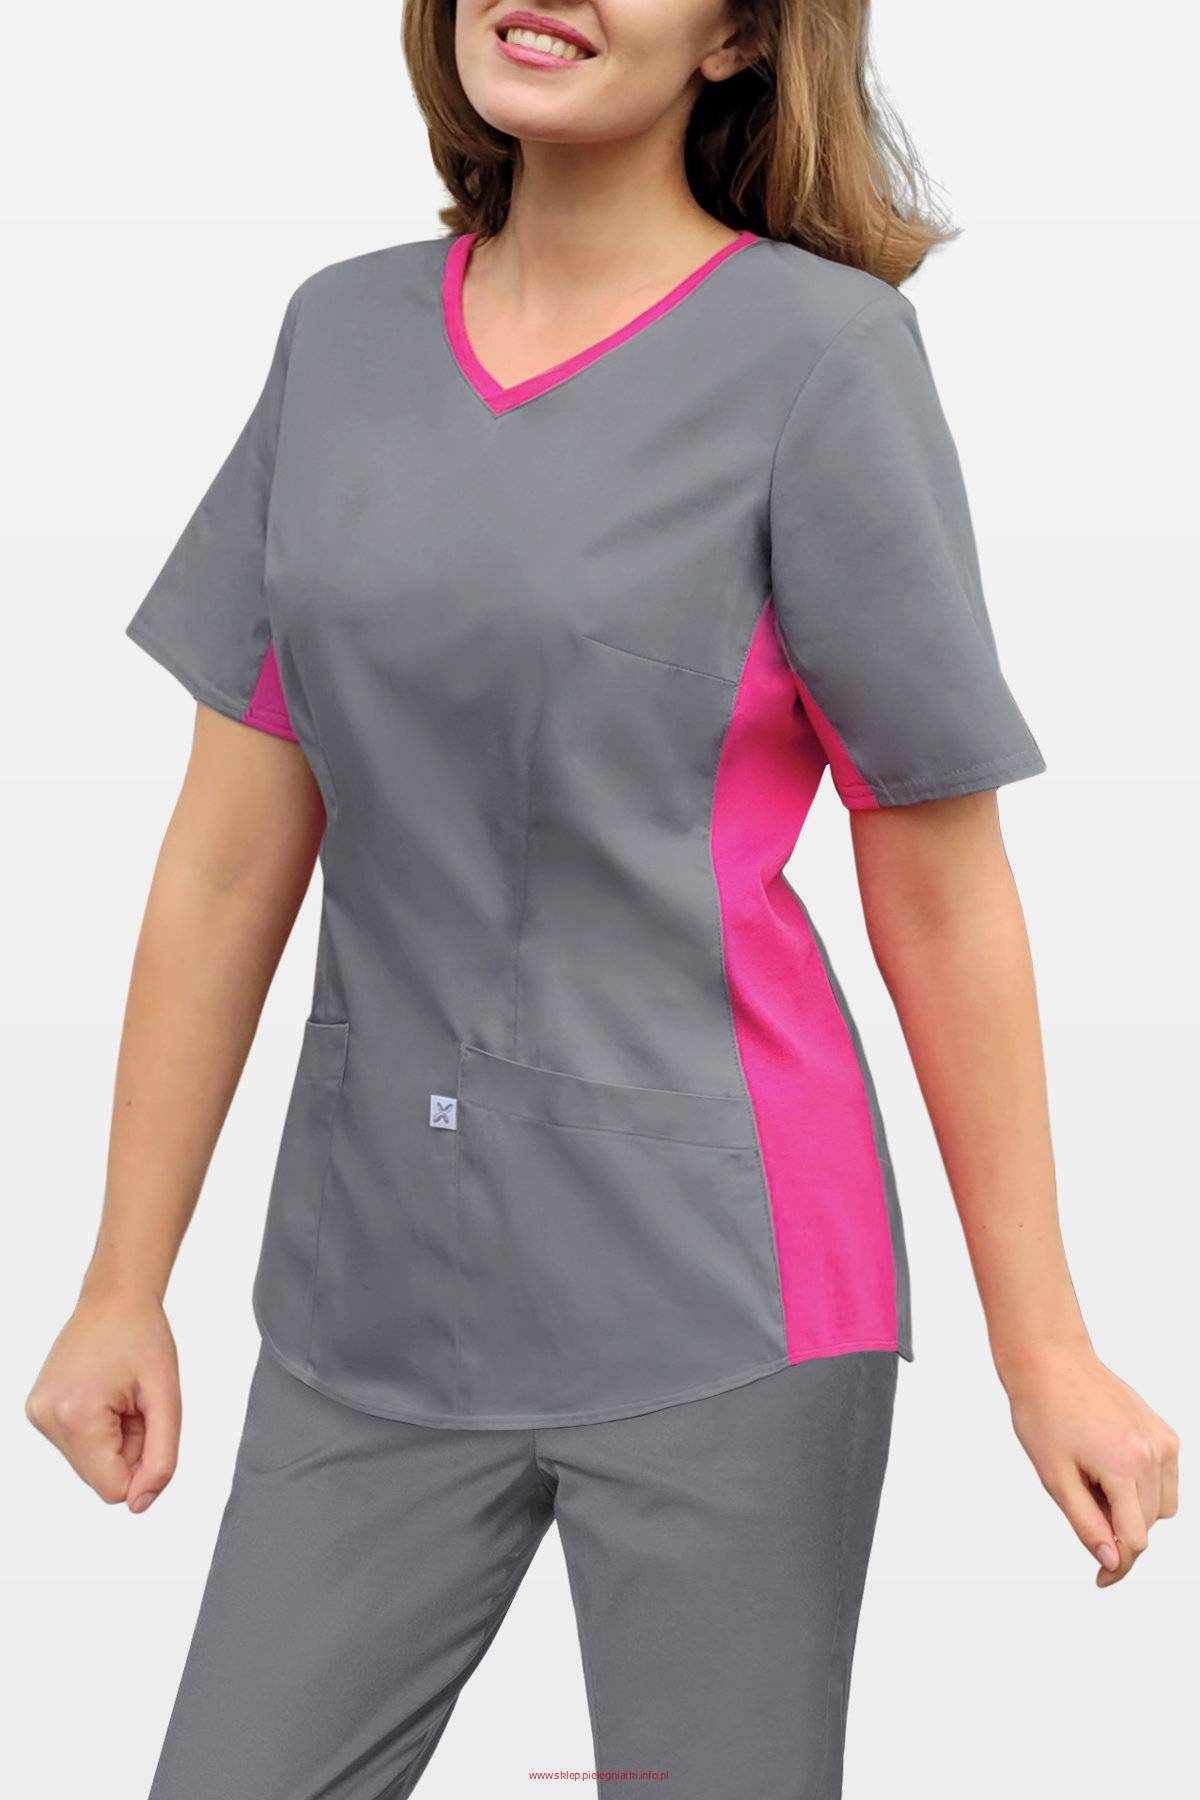 Bluza medyczna z elastycznym ściągaczem w boku - szary+fuksja (BE1-S/F)